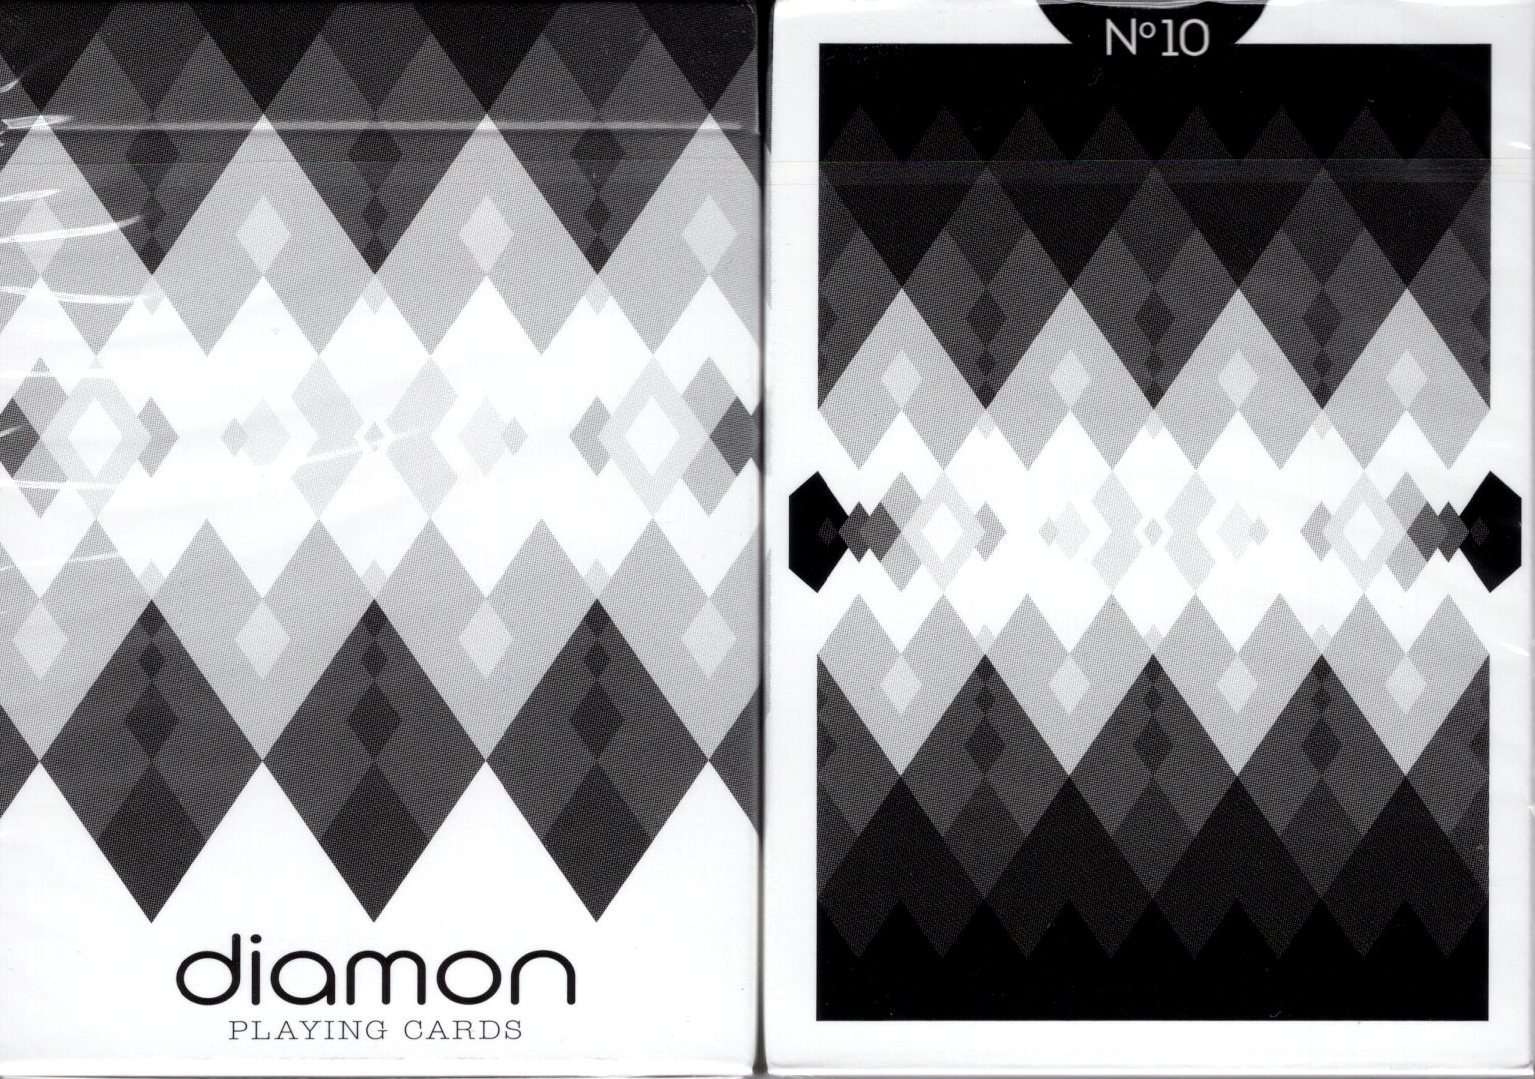 PlayingCardDecks.com-Diamon No 10 Playing Cards USPCC